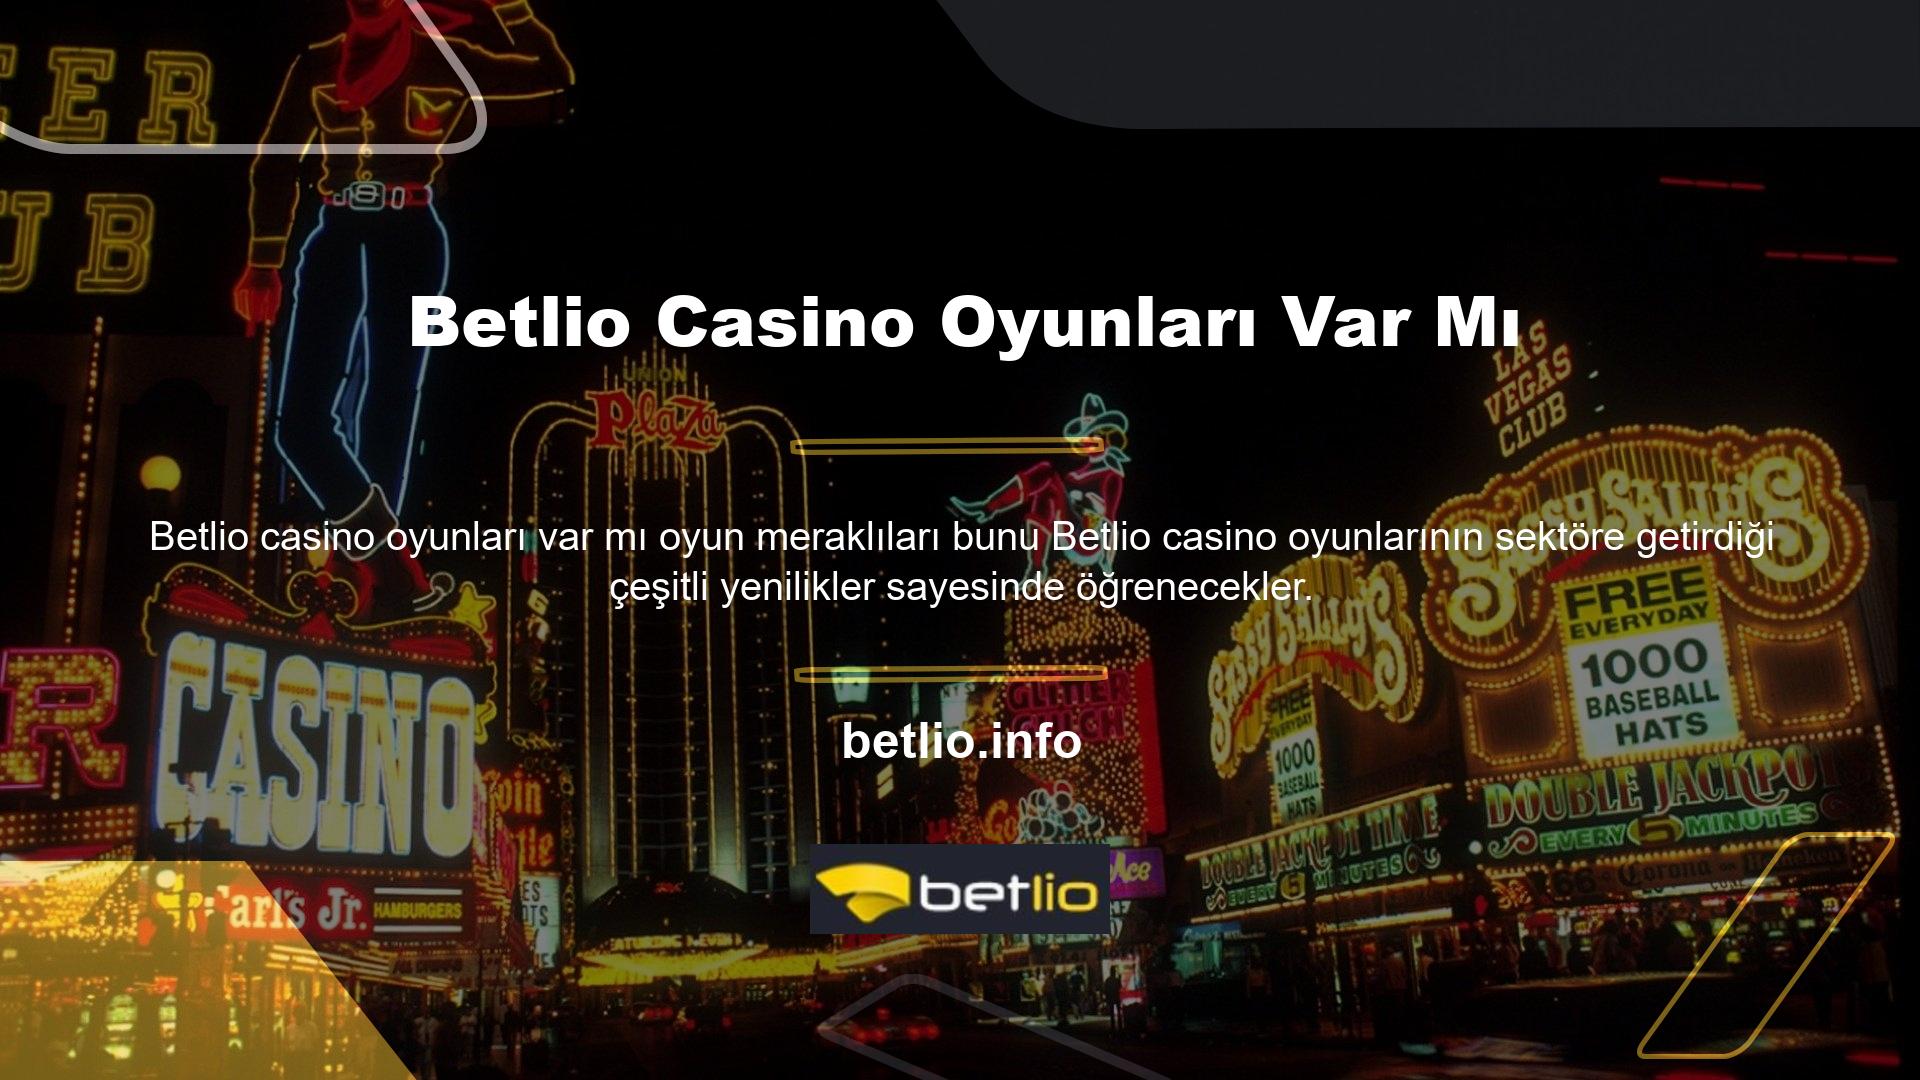 Betlio Casino oyuncular arasında oldukça popülerdir ve kalitesi benzersiz ve inanılmazdır